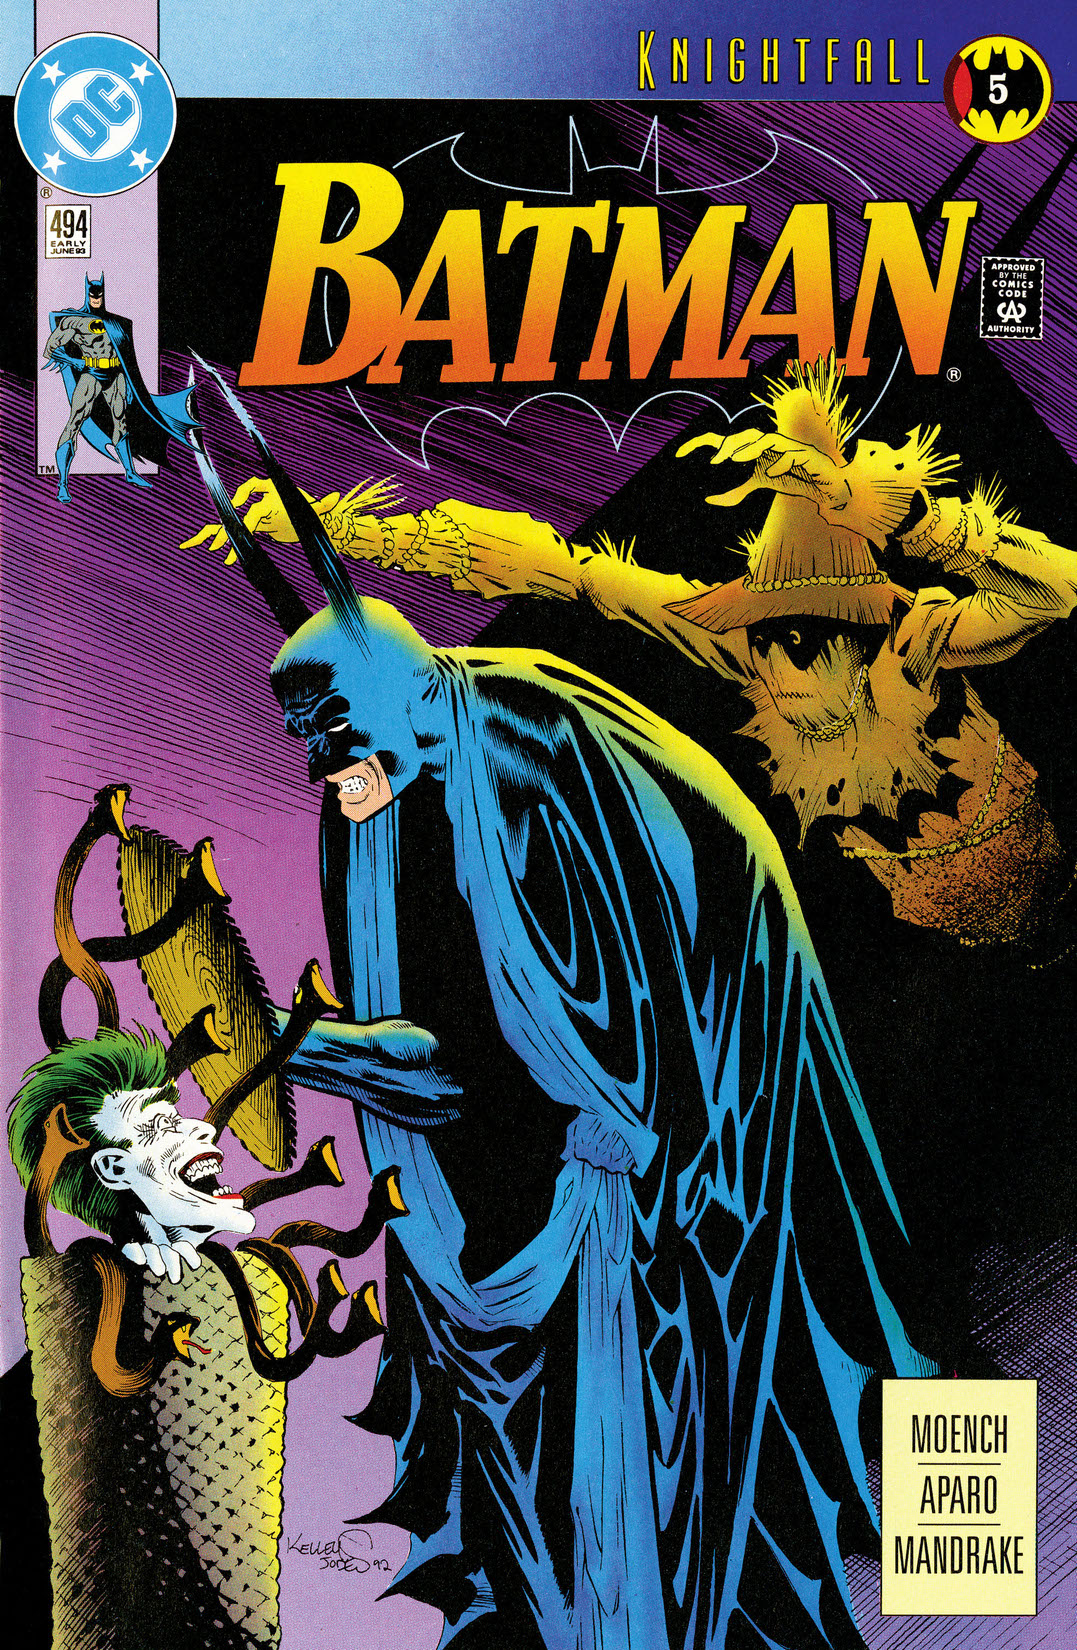 Batman (1940-) #494 preview images